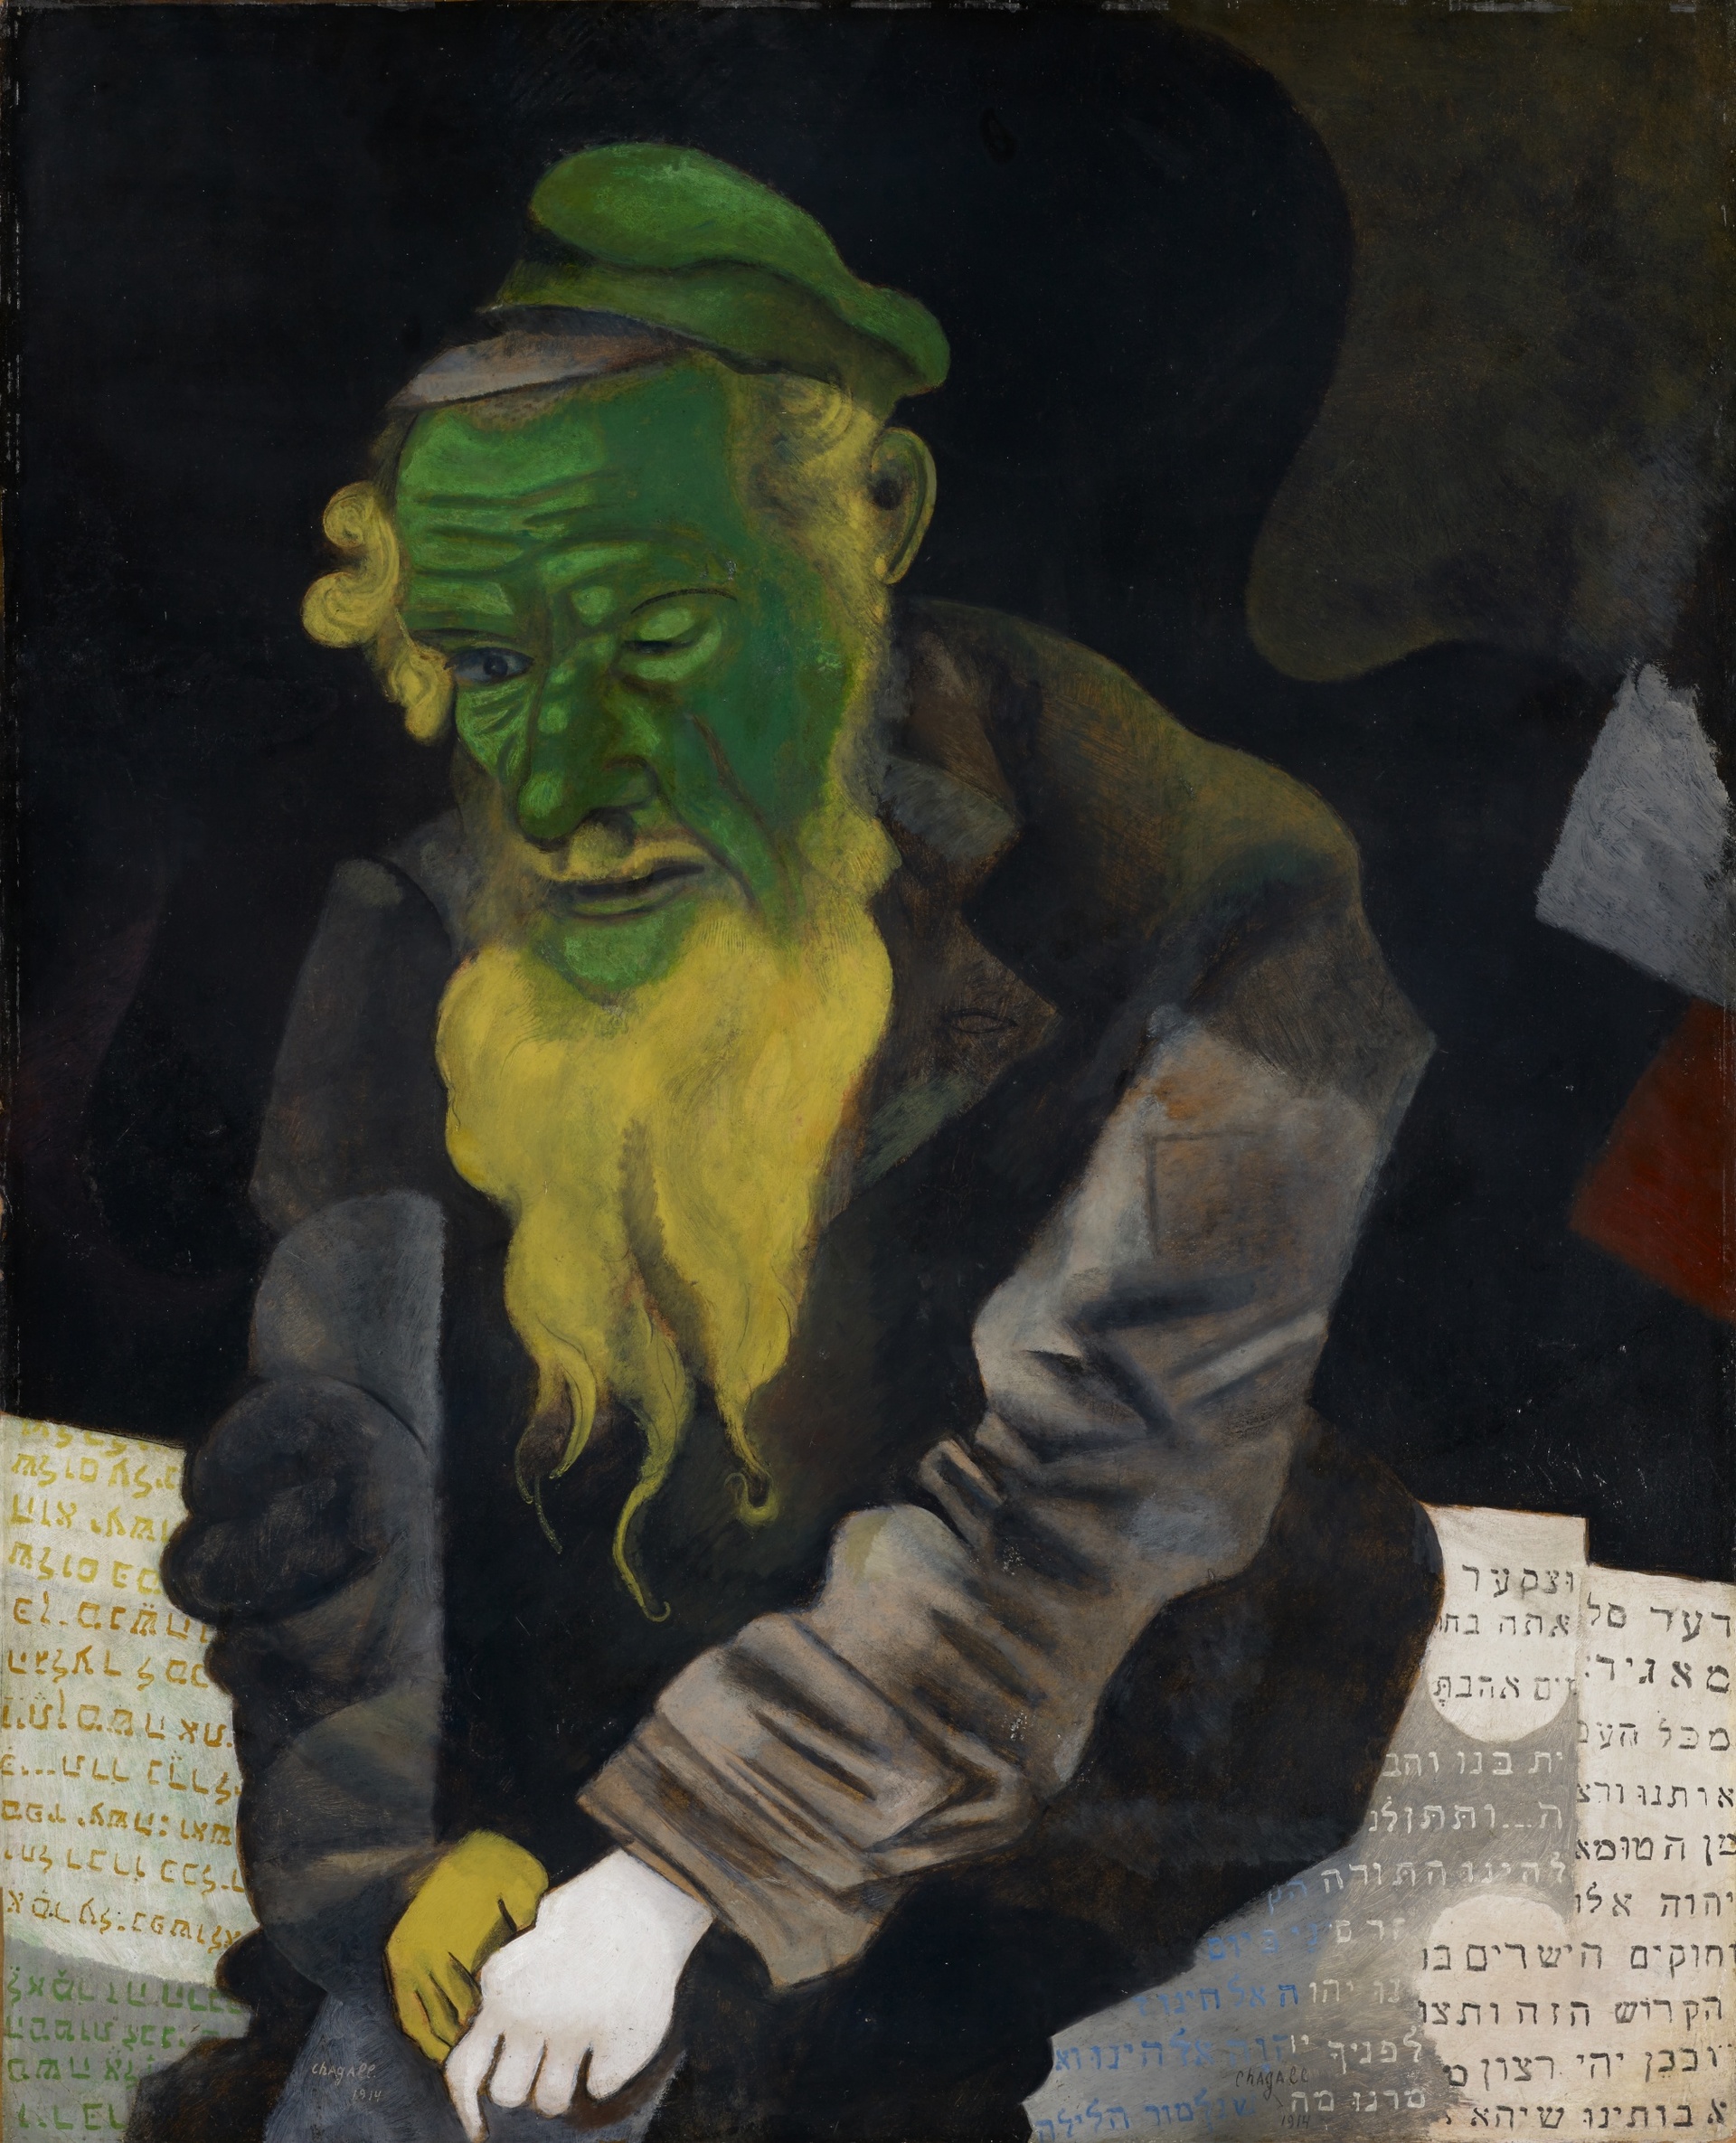 Marc Chagall, Der Jude in Grün, 1914</br>
Stiftung Im Obersteg, Depositum im Kunstmuseum Basel